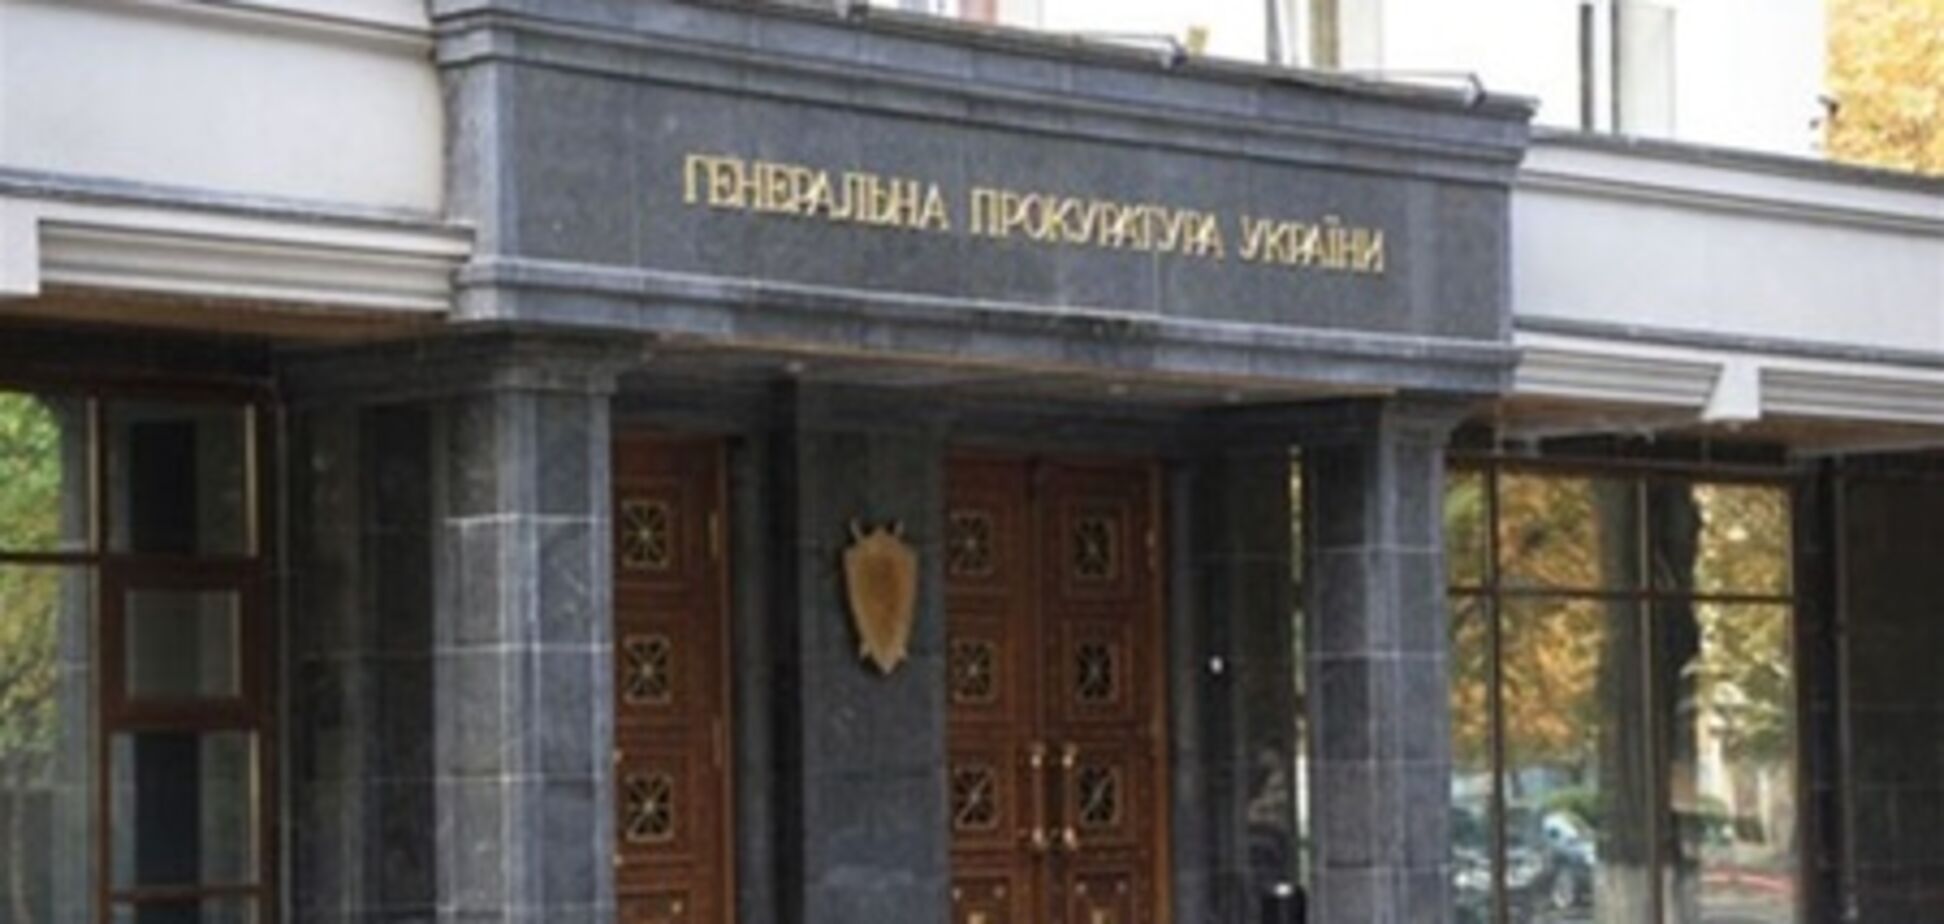 Распоряжение Тимошенко о продаже 201 предприятия признано незаконным